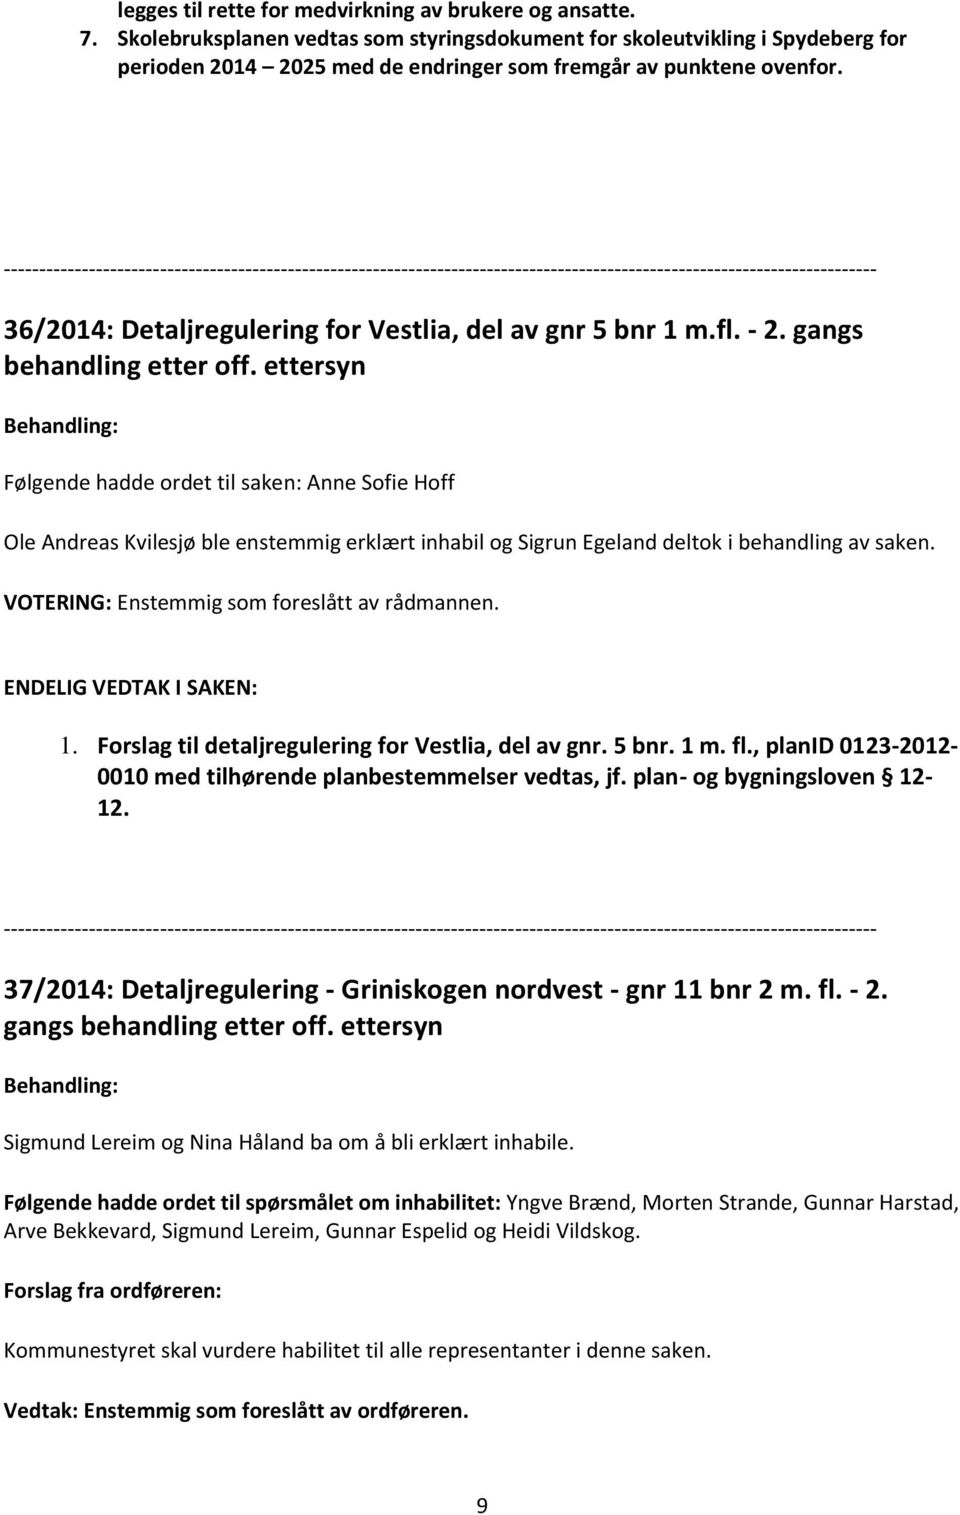 36/2014: Detaljregulering for Vestlia, del av gnr 5 bnr 1 m.fl. - 2. gangs behandling etter off.